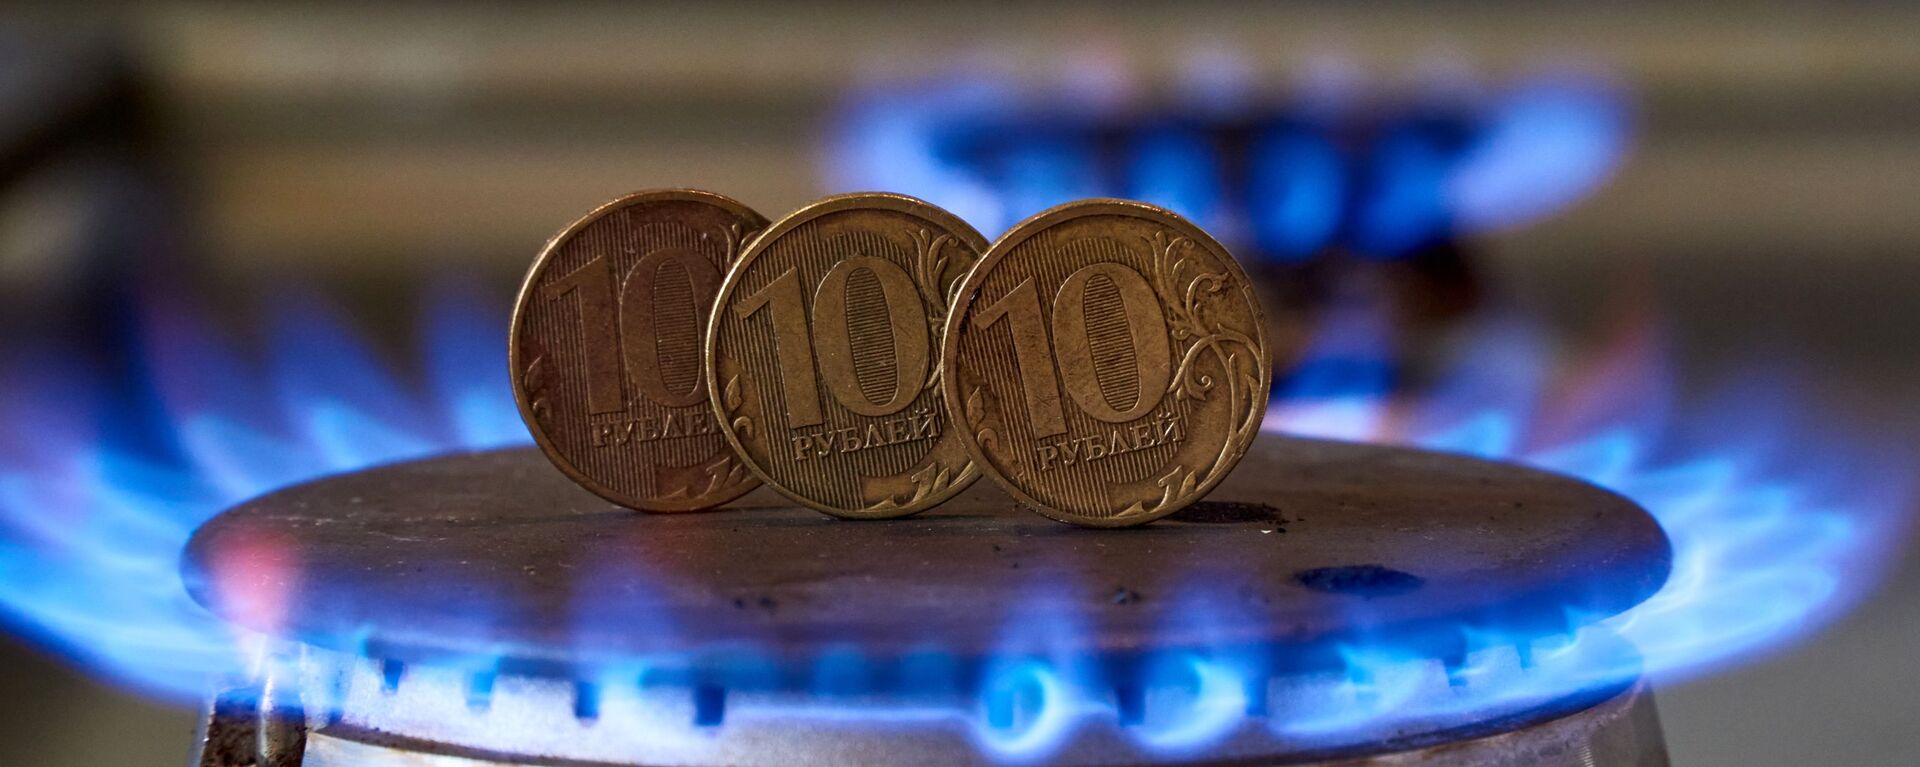 Монеты номиналам десять рублем на газовой плите.  - Sputnik Абхазия, 1920, 01.12.2021